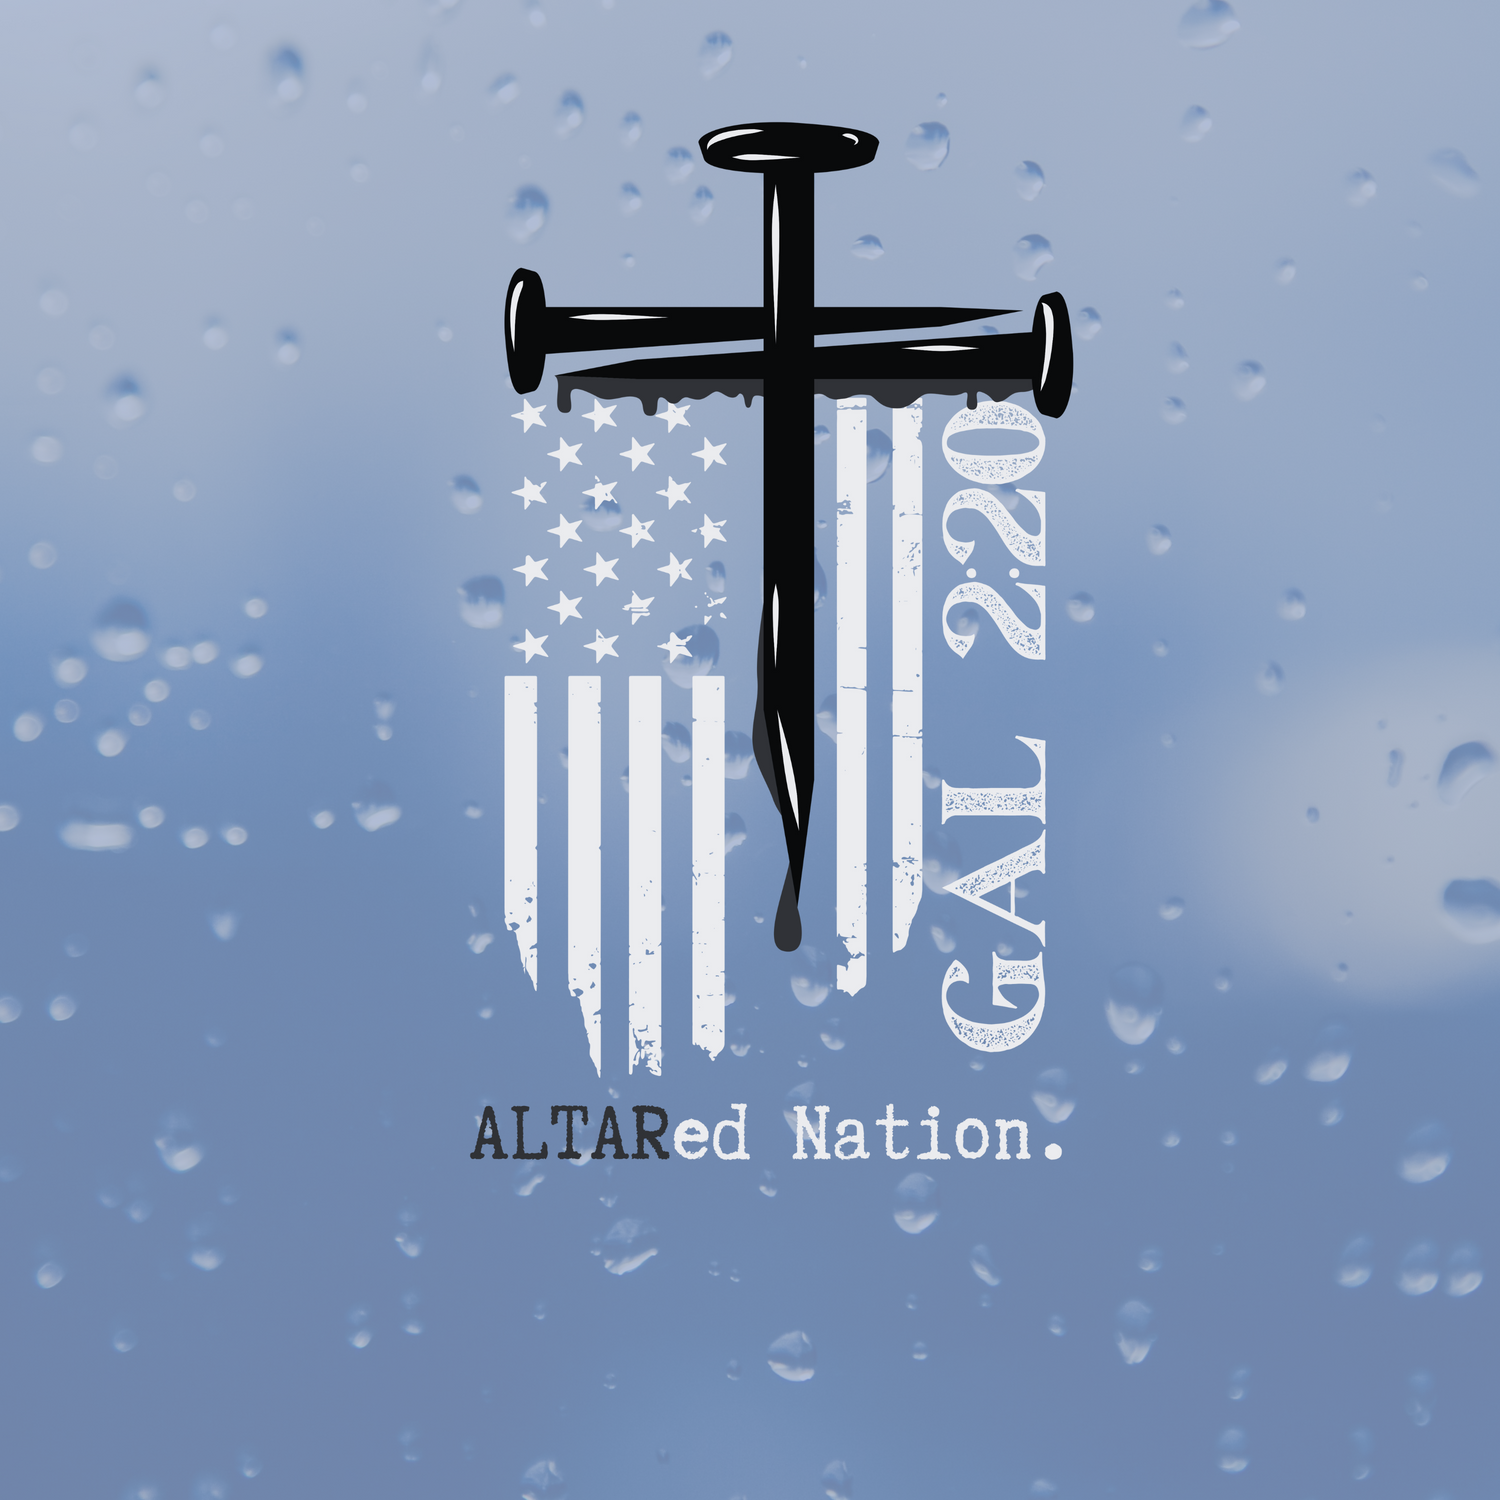 ALTARed Nation Design